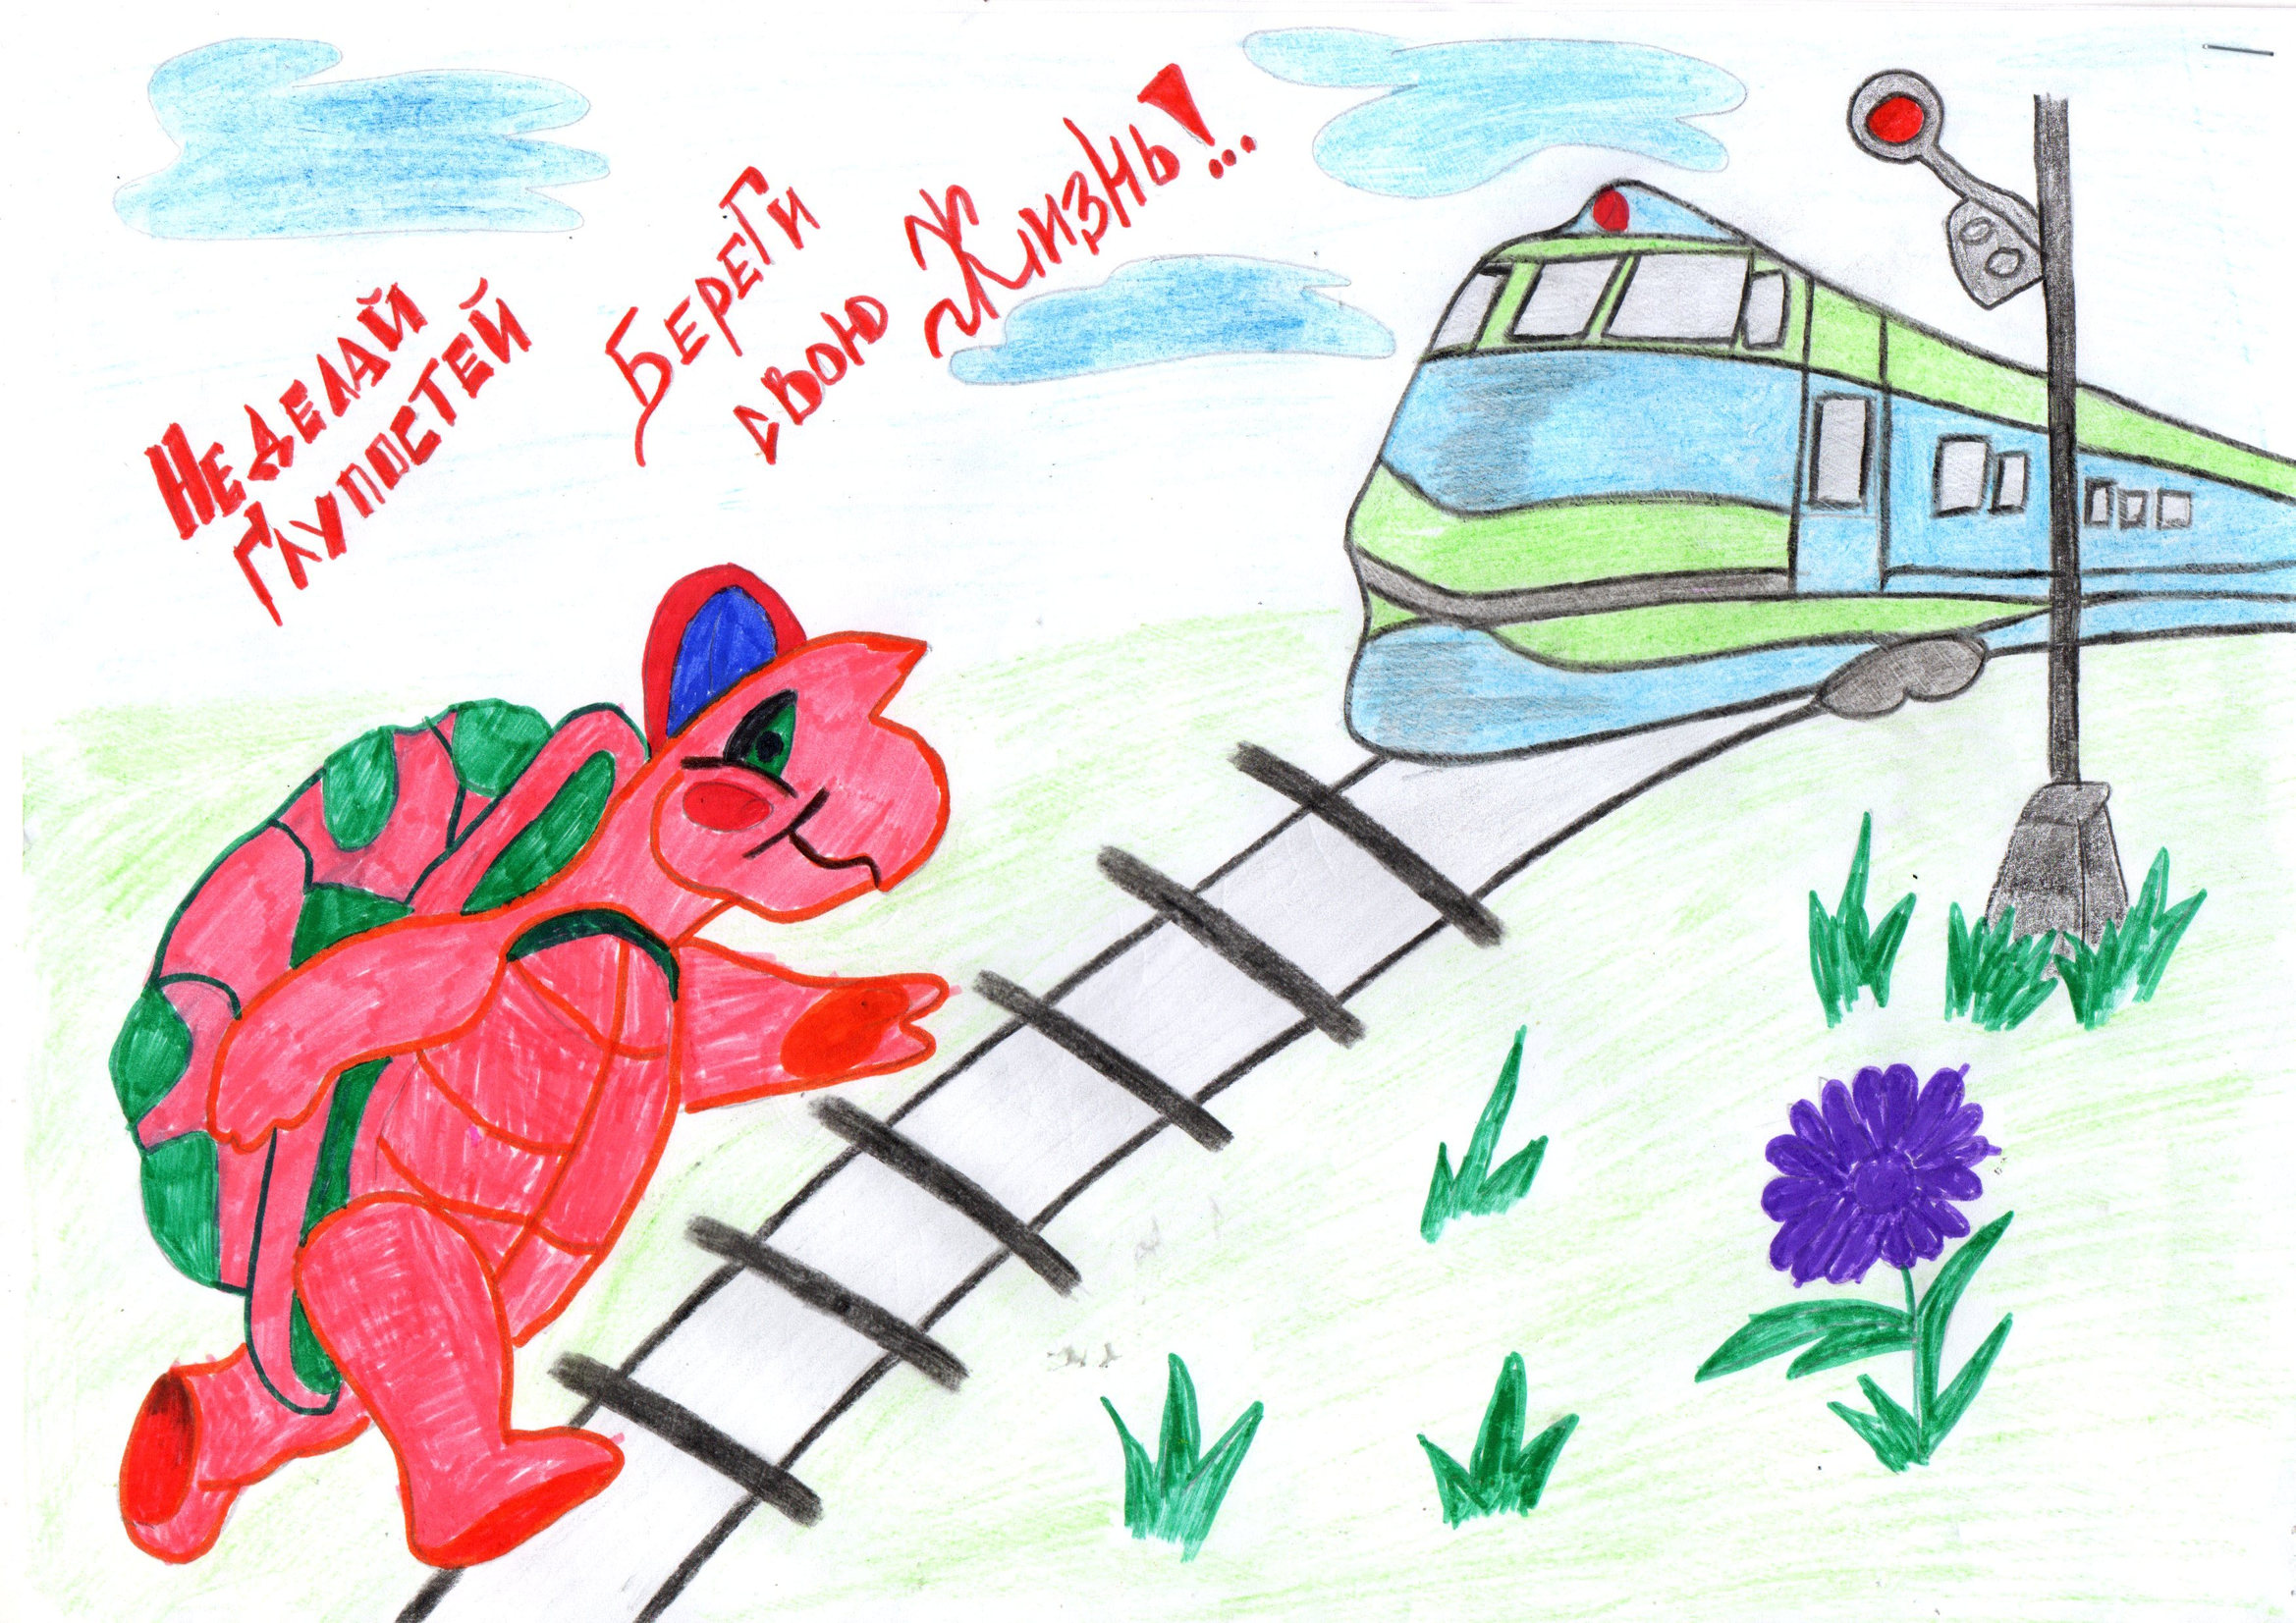 Детская железная дорога нарисовать окружающий